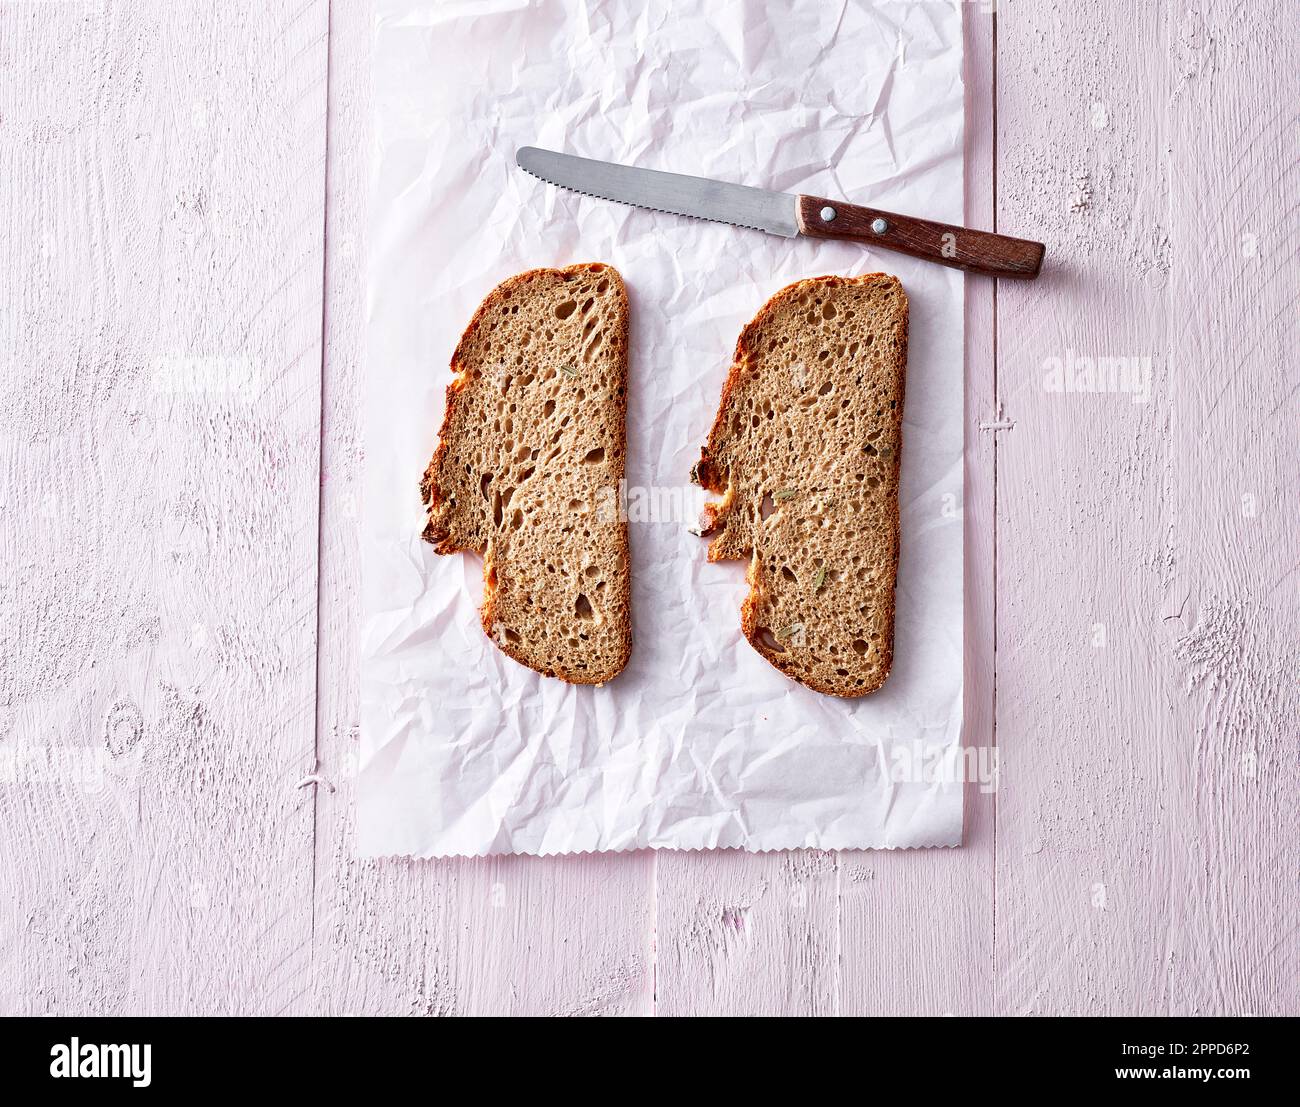 Studioaufnahme von zwei Scheiben Brot und Küchenmesser, die auf einem Stück Papier liegen Stockfoto